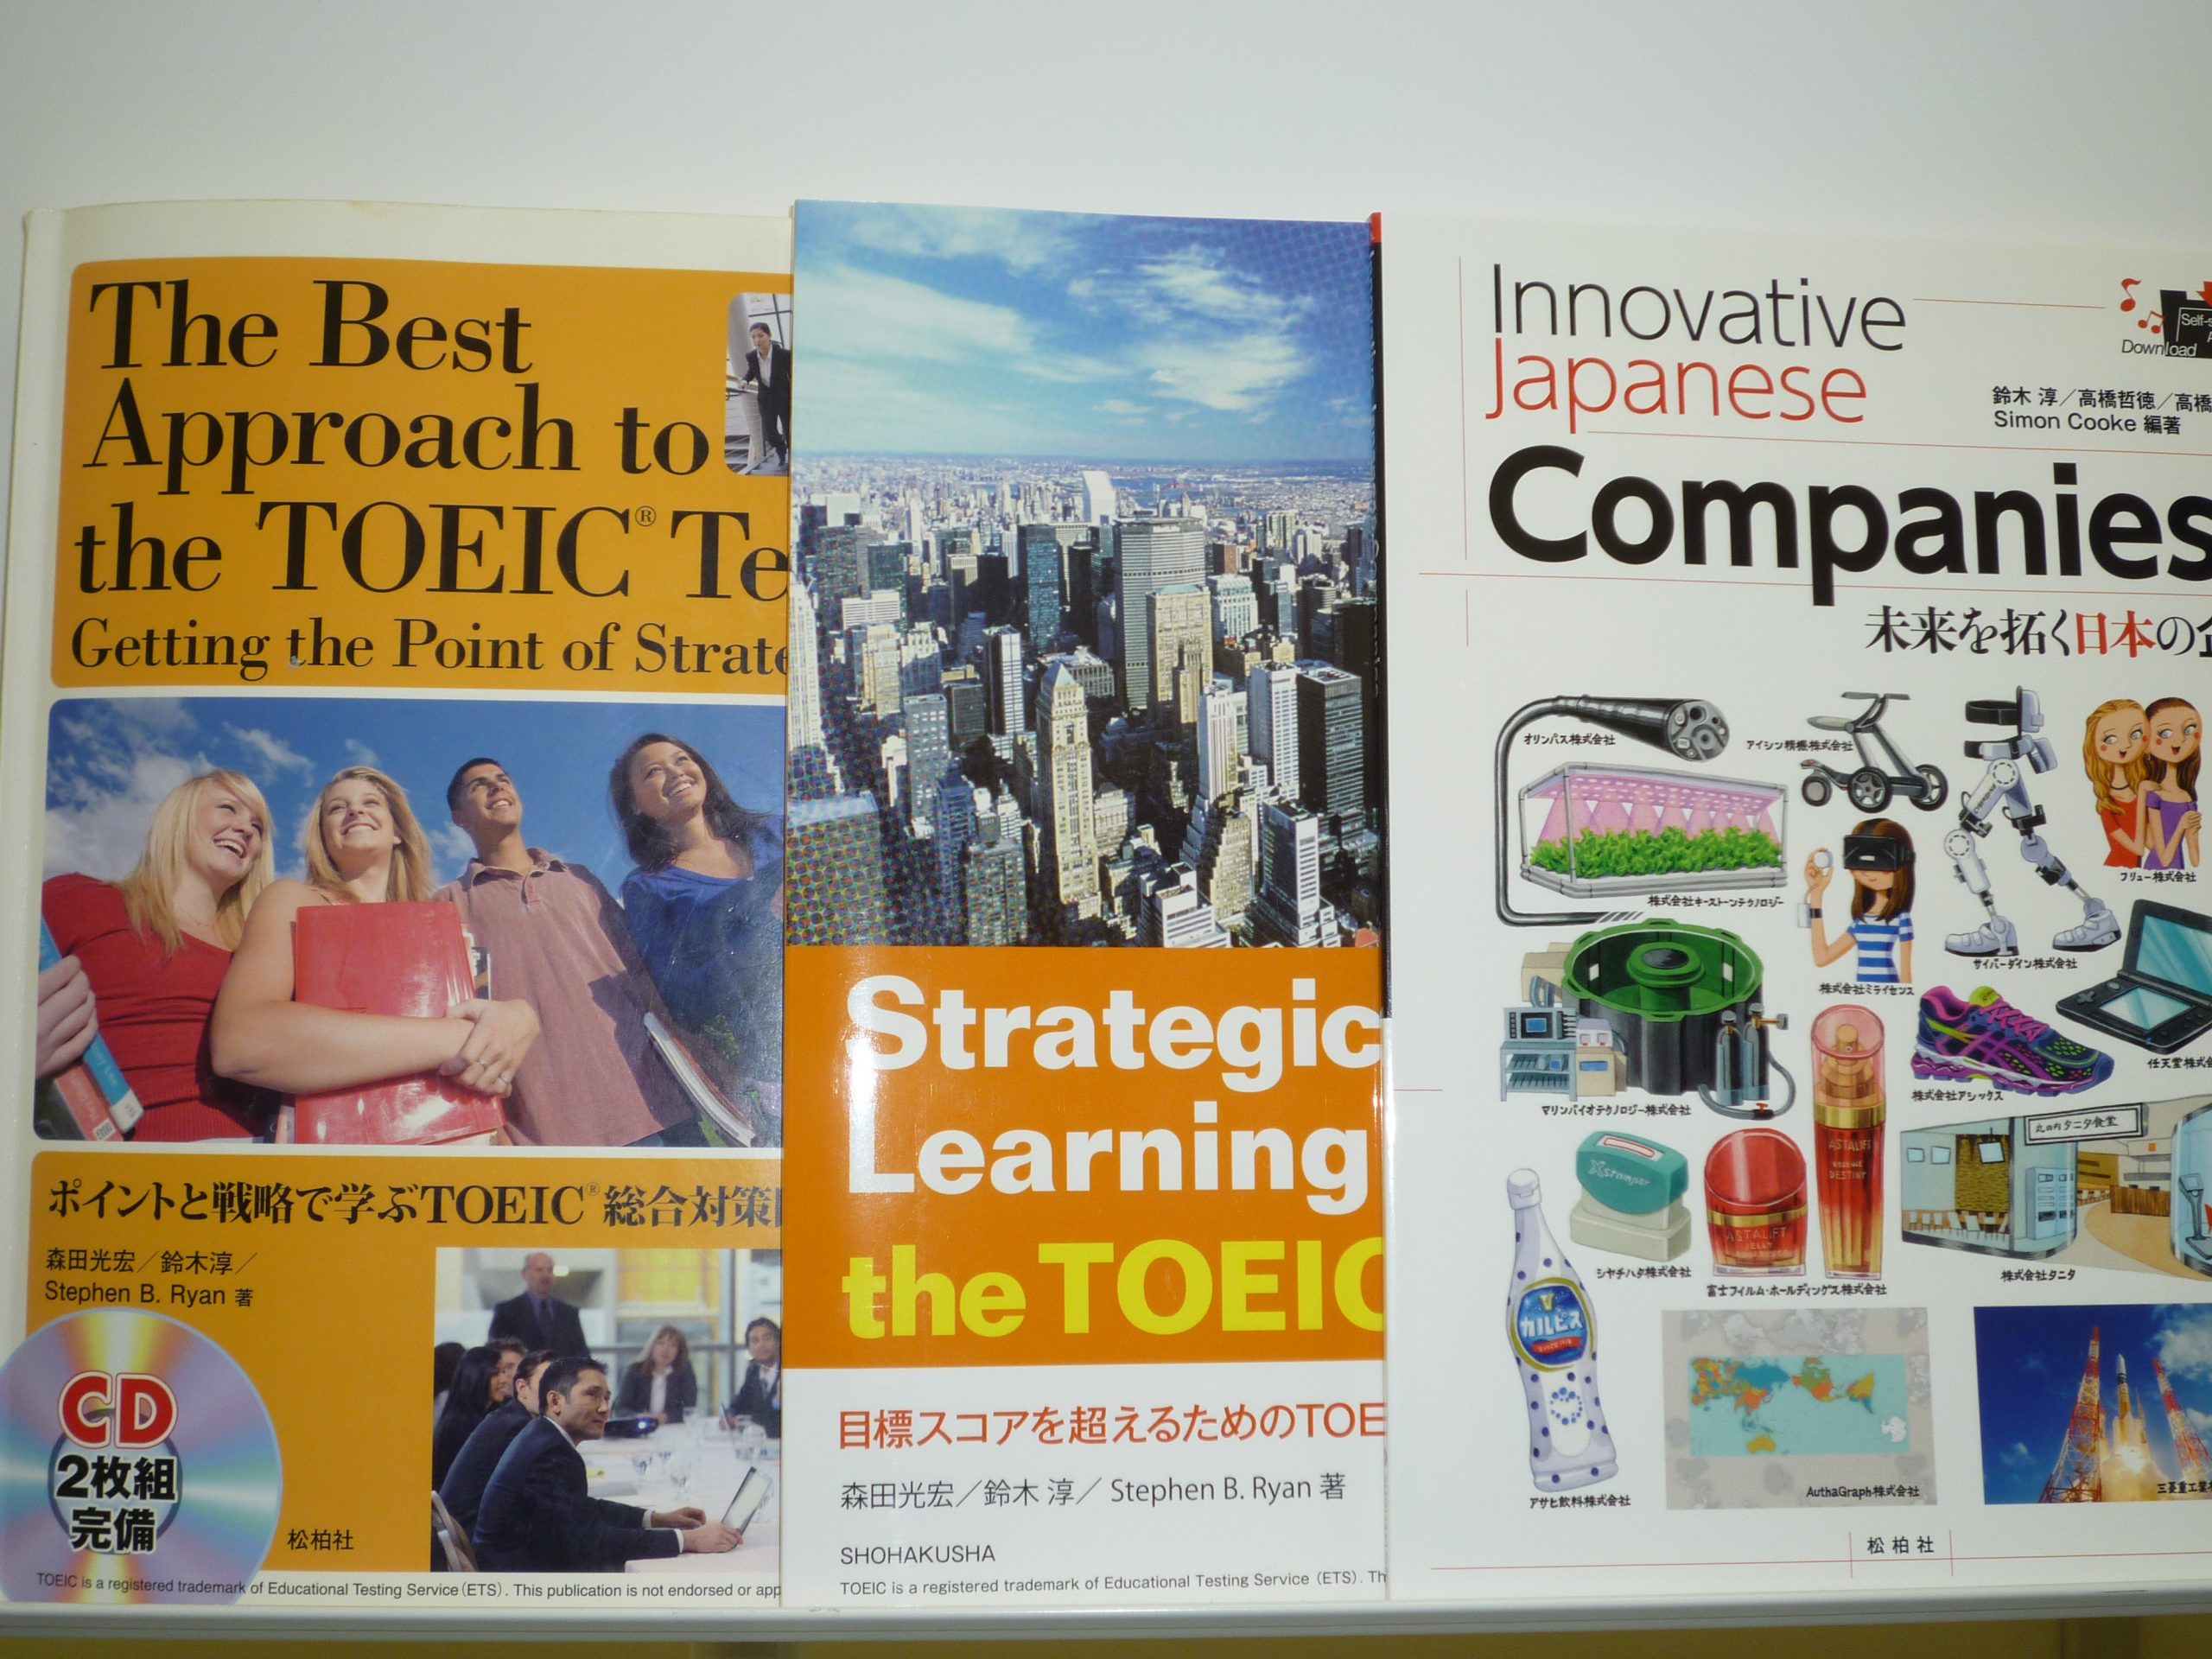 作成した教材の一部。左からThe Best Approach to the TOEIC®Test（森田光宏・鈴木淳・Stephen B. Ryan 著、松柏社、2011年）、Strategic Learning for the TOEIC®Test（森田光宏・鈴木淳・Stephen B. Ryan 著、松柏社、2015年）、Innovative Japanese Companies（鈴木淳・高橋哲徳・高橋史朗・Simon Cooke 編著、松柏社、2017年）